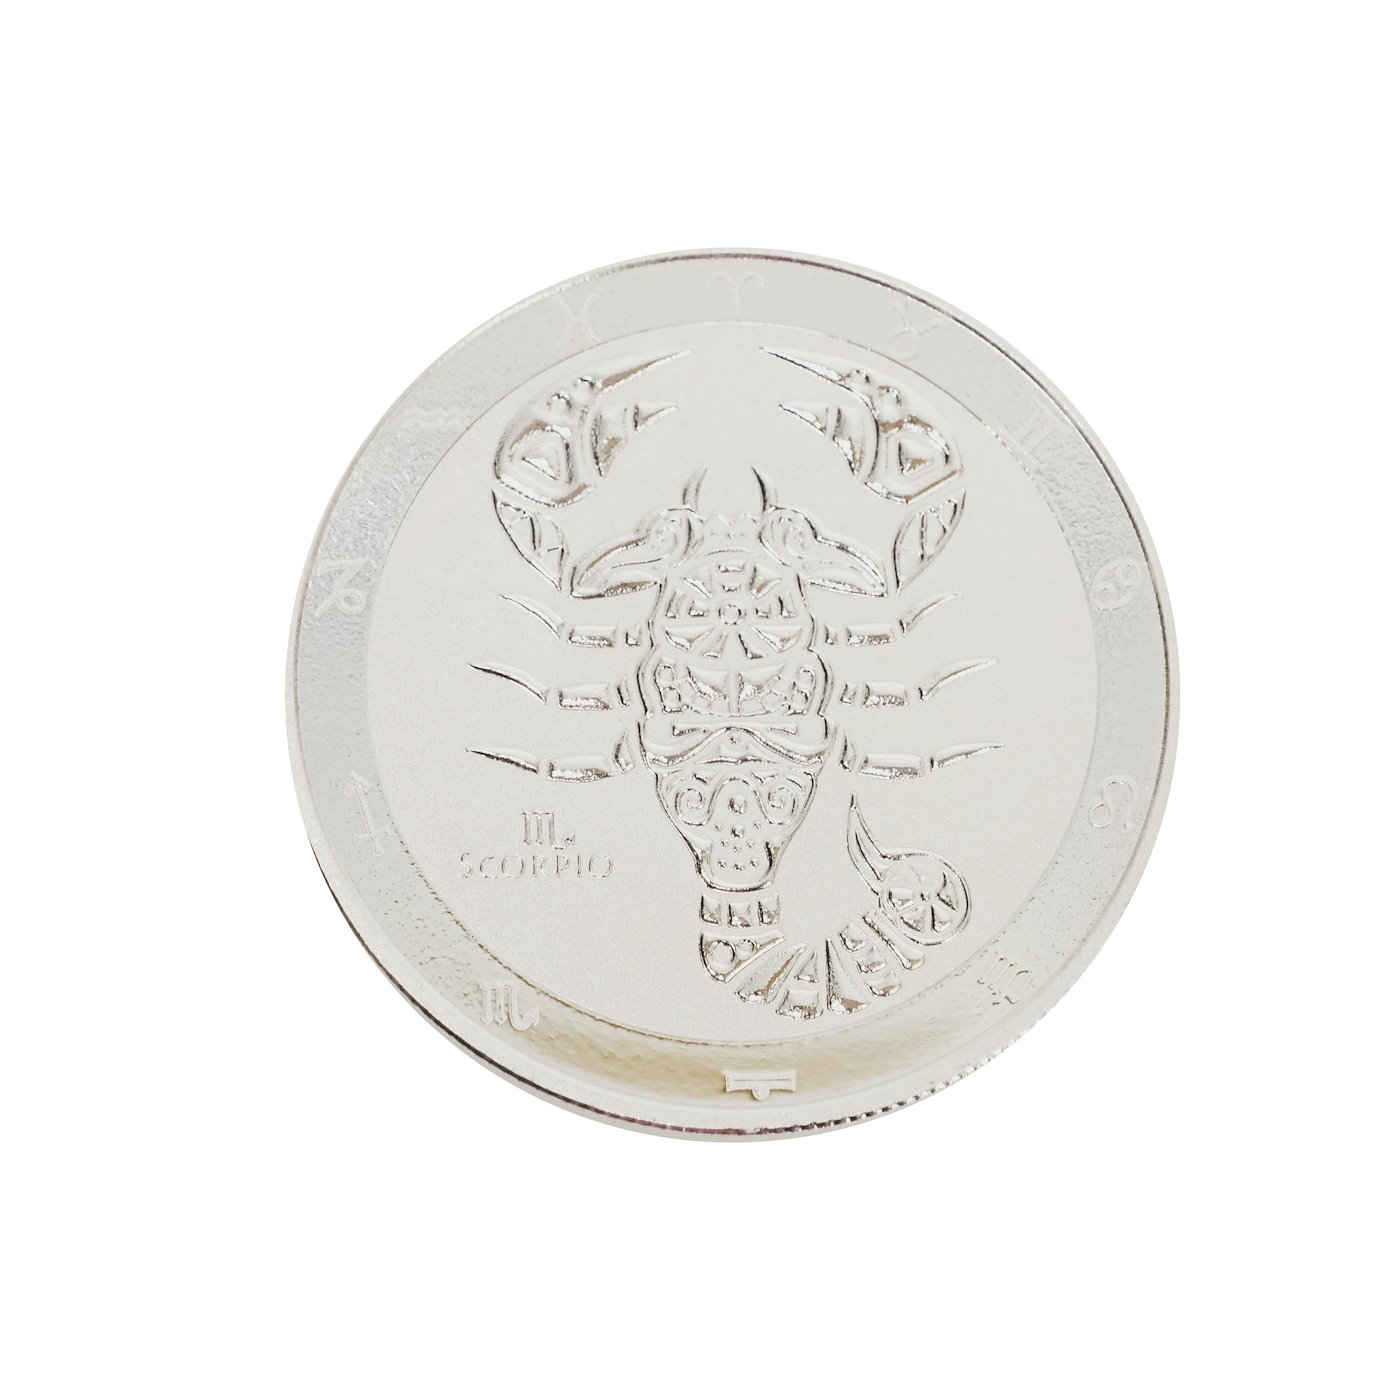 .. - Znamení zvěrokruhu stříbrná mince Tokelau 2022 znamení ŠTÍR, stříbro 999/1000, hrubá hmotnost 31,1 g